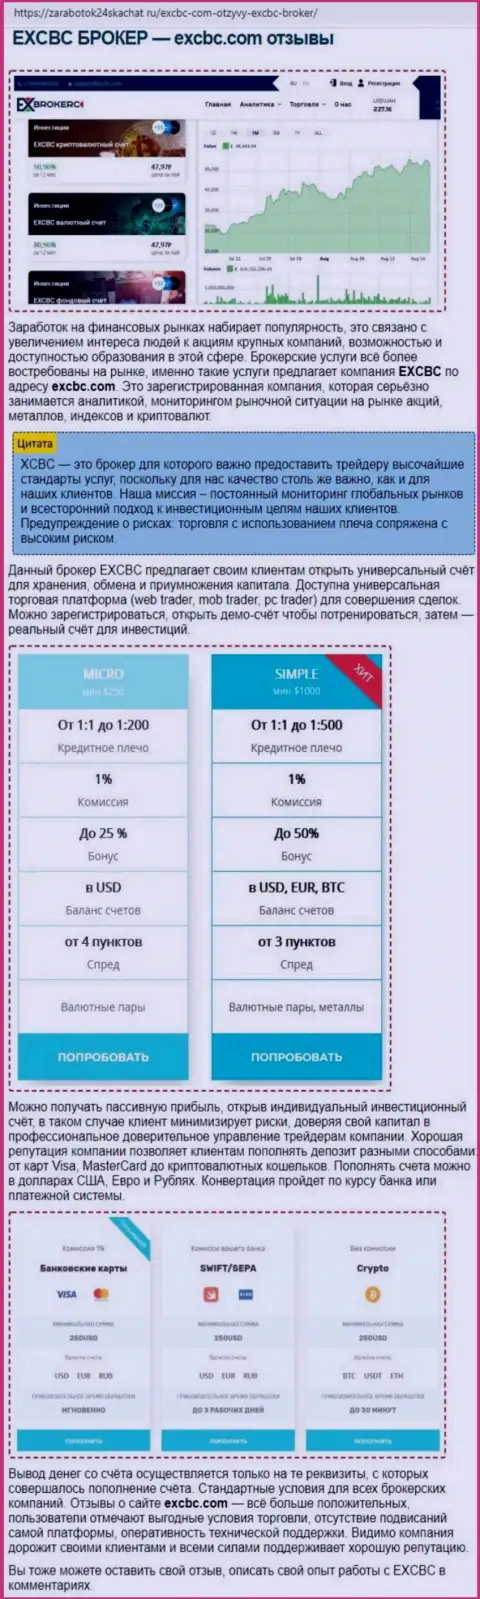 Сведения о Форекс дилинговой компании ЕХ Брокерс в обзорной статье на сайте zarabotok24skachat ru